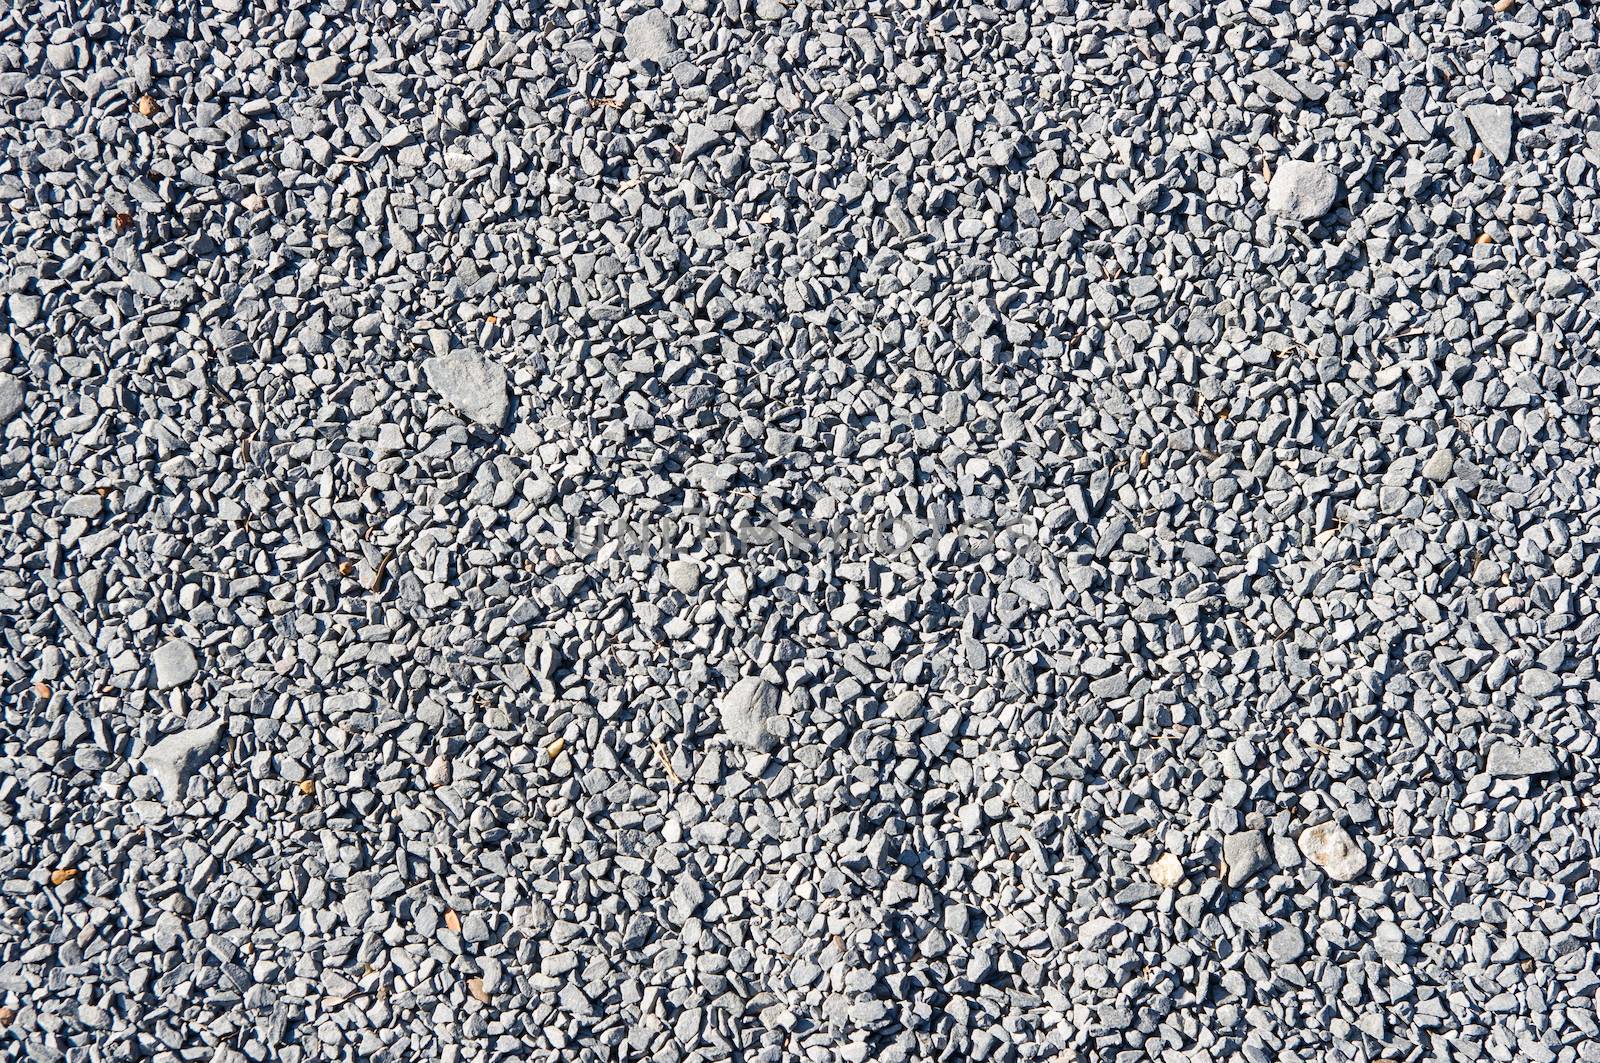 pebble stones background. closeup of stones texture